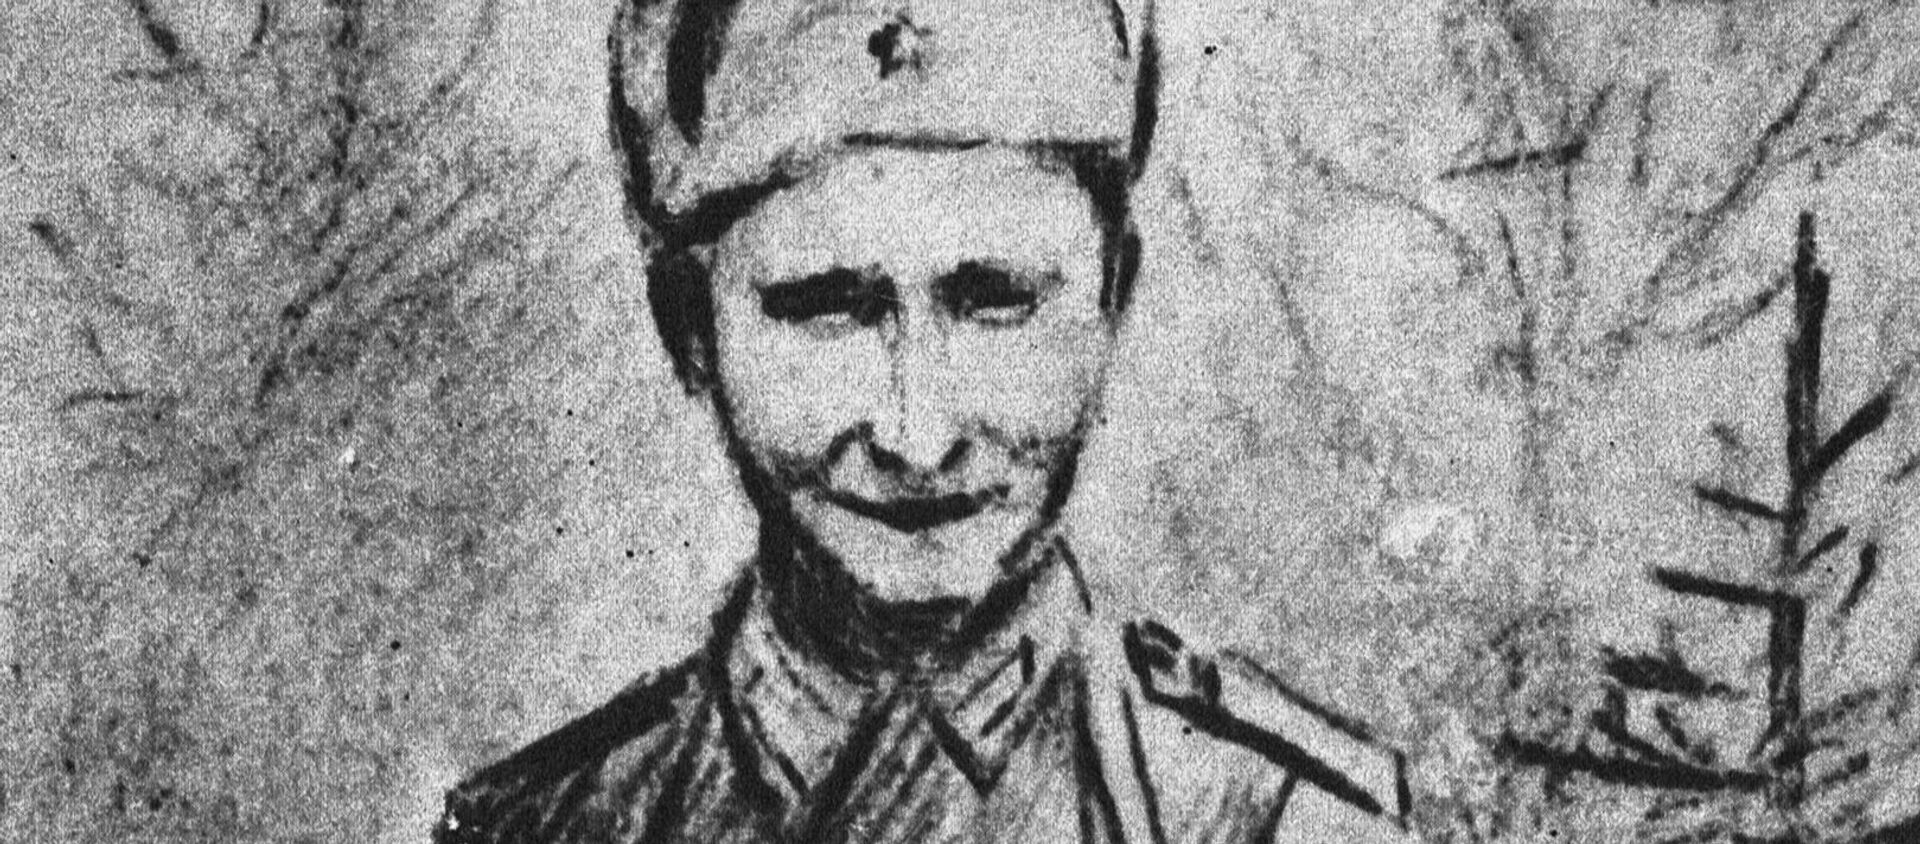 Гвардии сержант Николай Спрингис, 1943 год, рисунок Е.Ванага - Sputnik Latvija, 1920, 13.05.2020